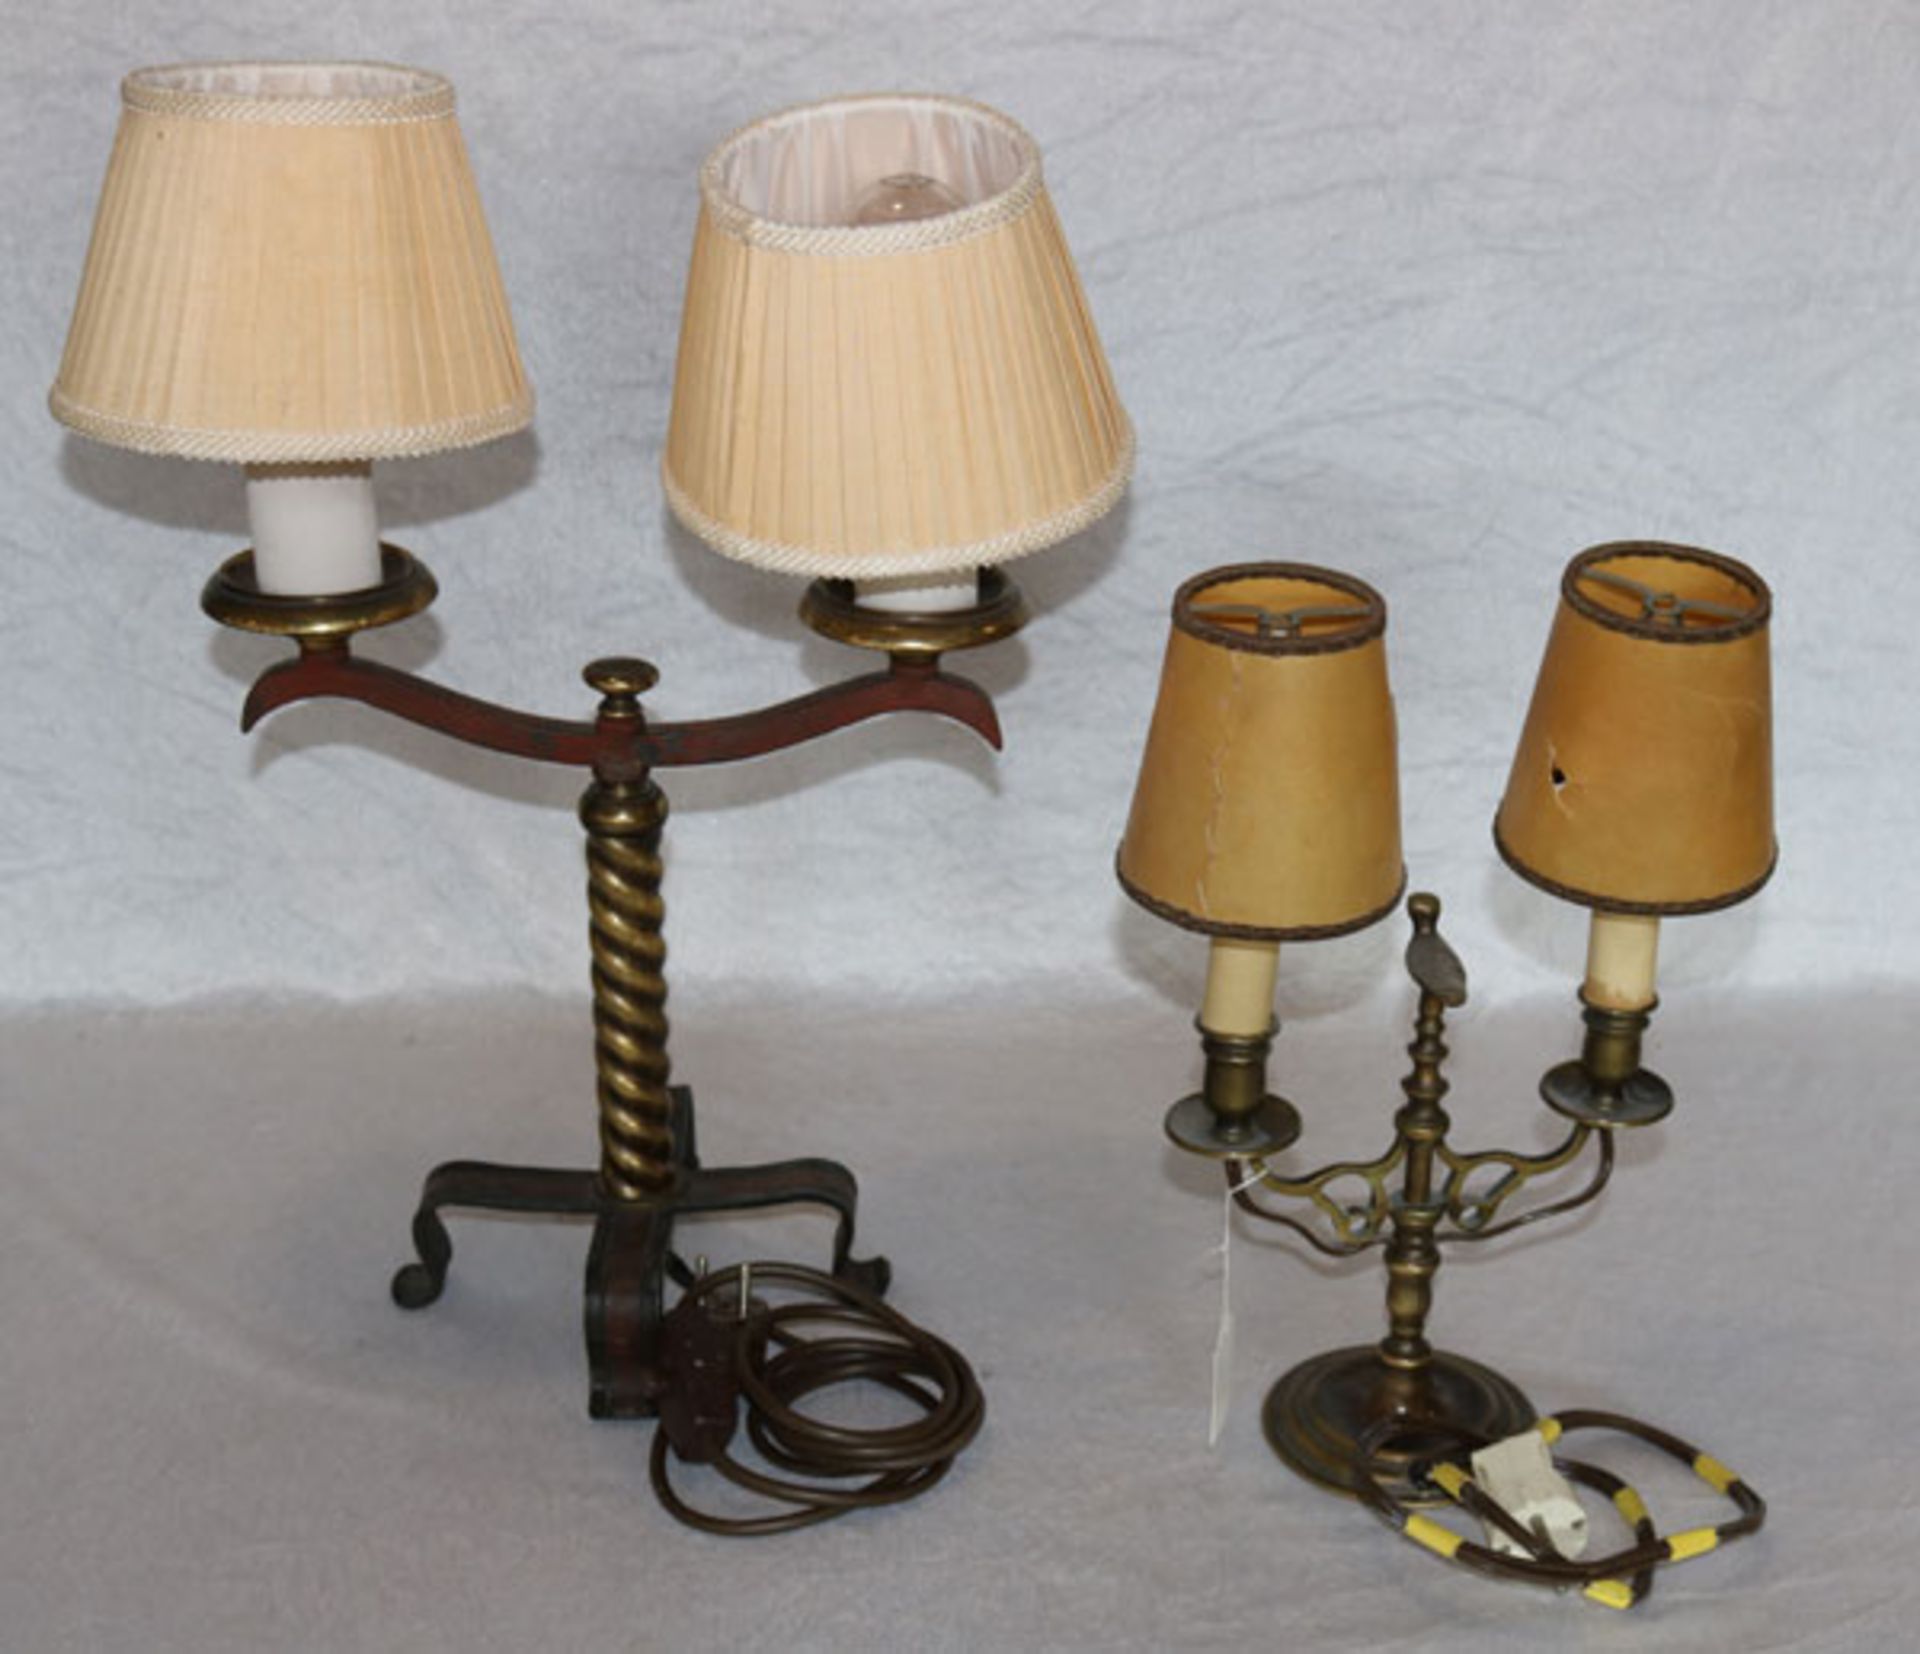 2 Metall Tischlampen, 2-armig mit Schirmchen, H 51 /34 cm, B 40/24 cm, Altersspuren, Schirmchen